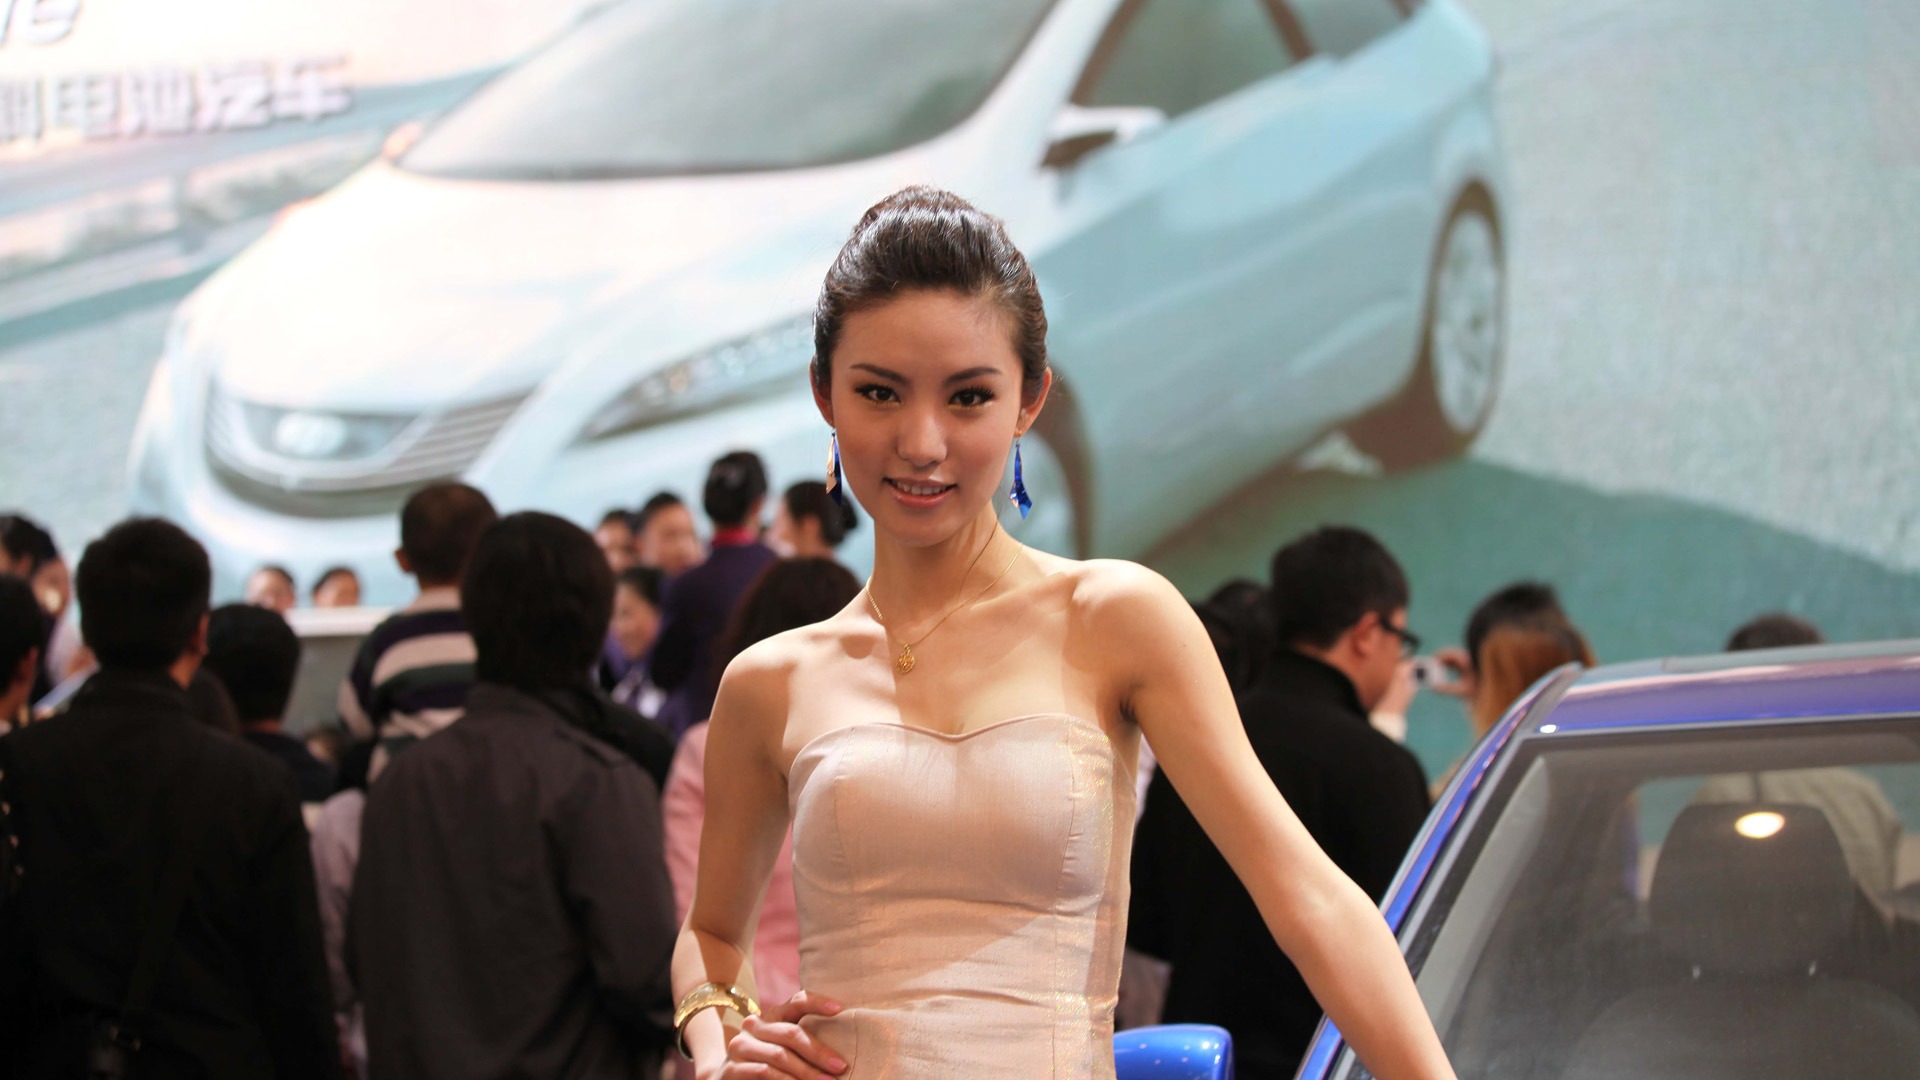 2010 v Pekingu Mezinárodním autosalonu krása (2) (vítr honí mraky práce) #15 - 1920x1080